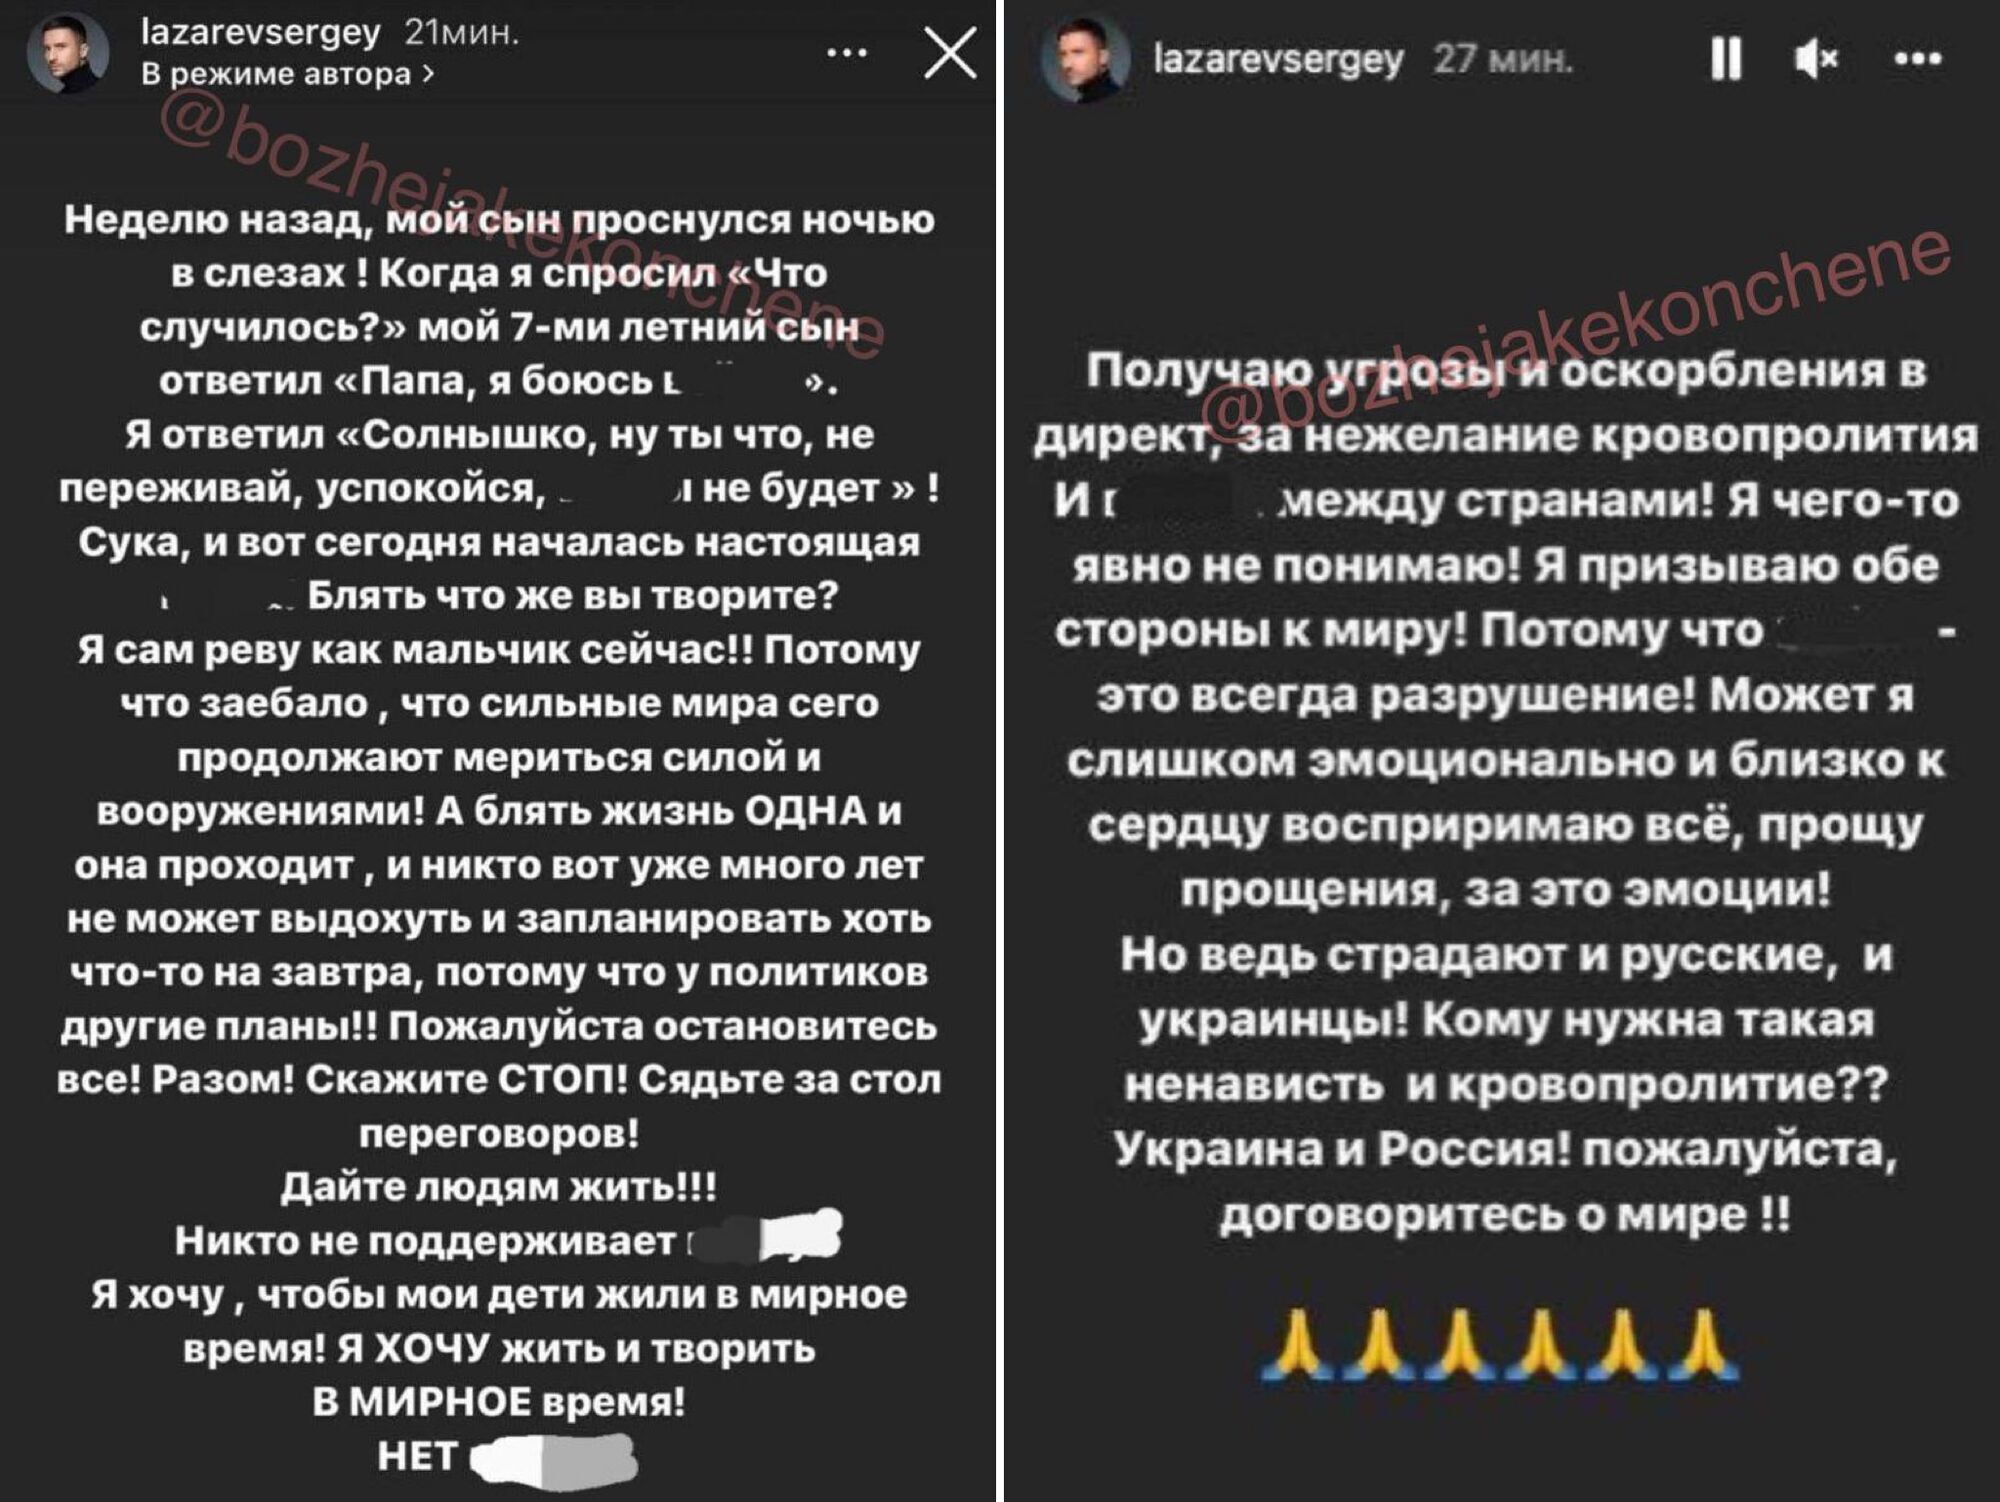 Антивоенный пост Сергей Лазарева за 24 февраля, который он удалил